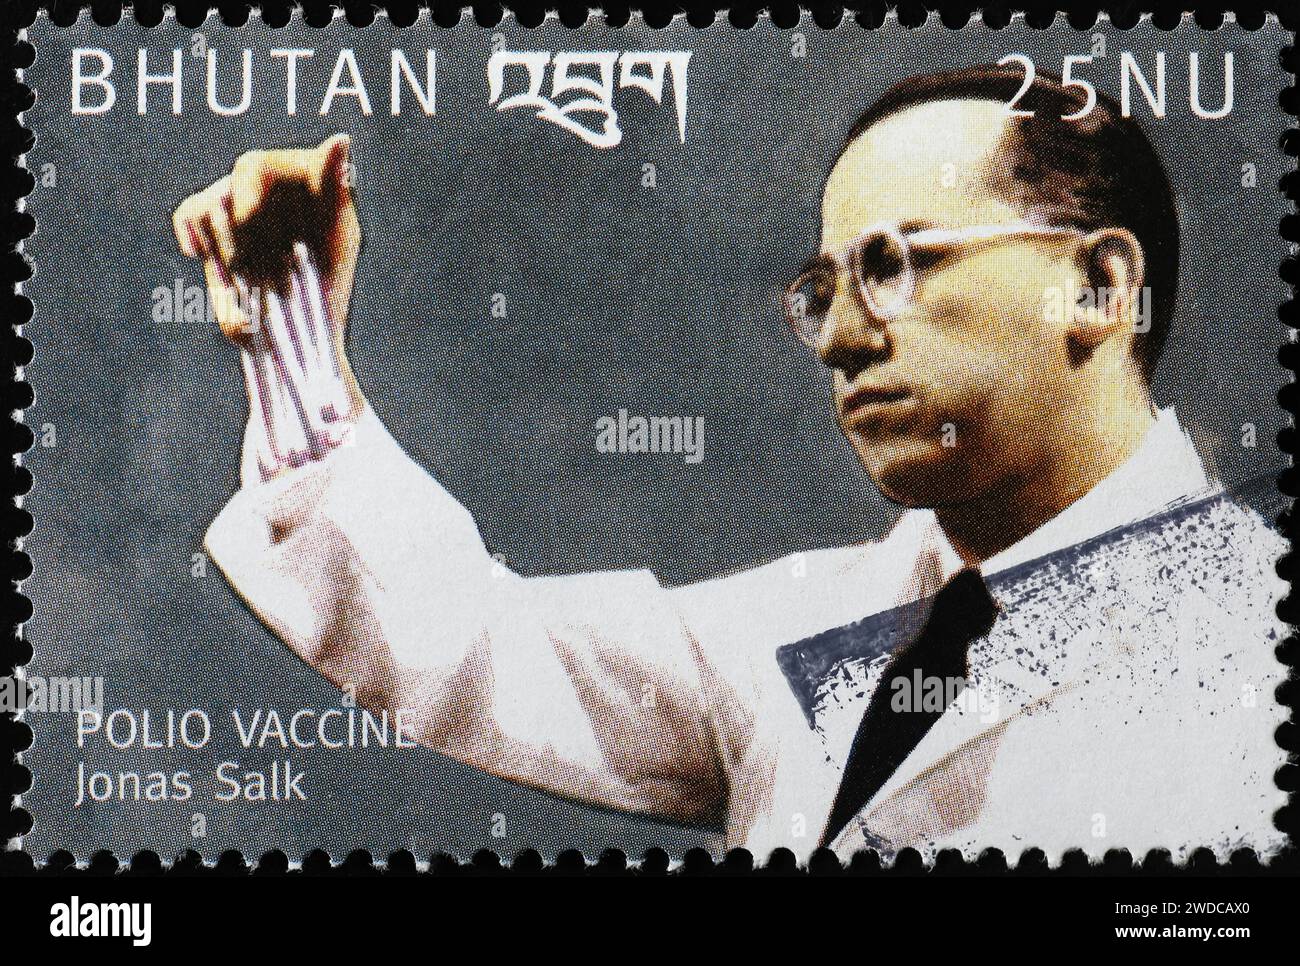 Scopritore del vaccino antipolio Jonas Salk sul francobollo Foto Stock